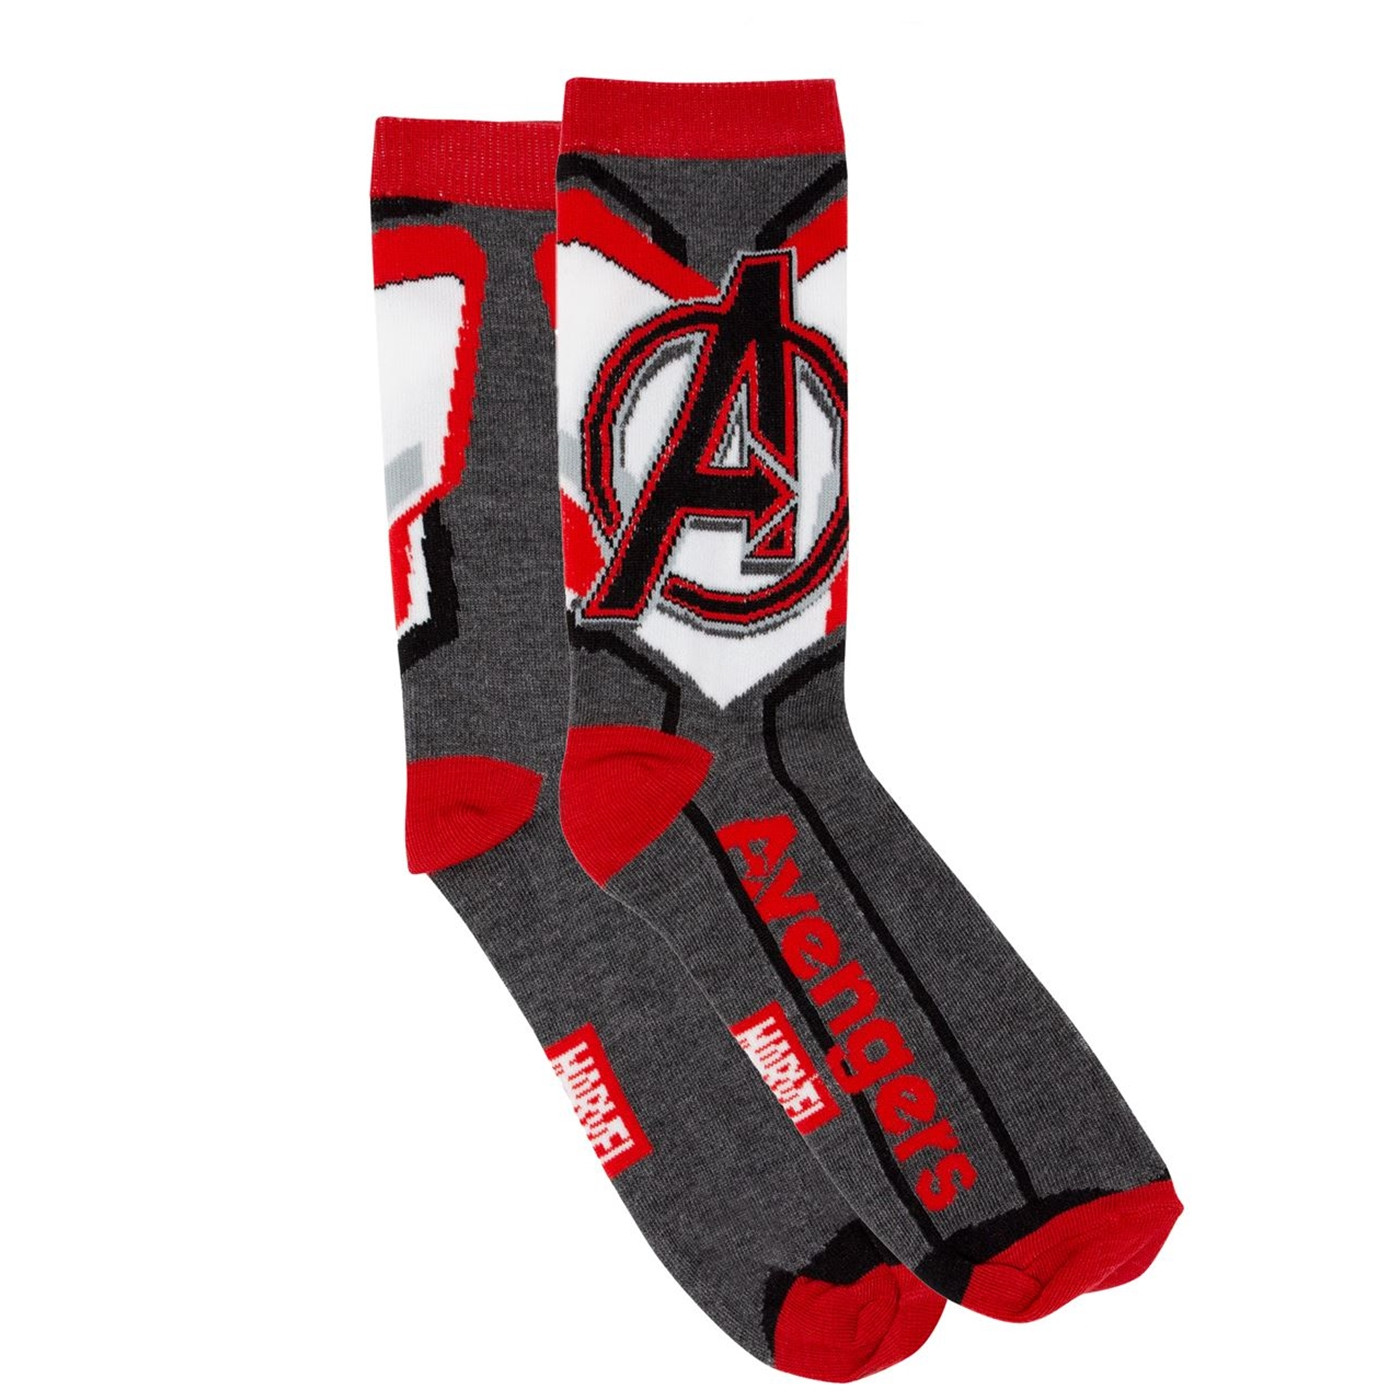 Avengers Endgame Quantum Realm Suit Costume Men's Crew Socks